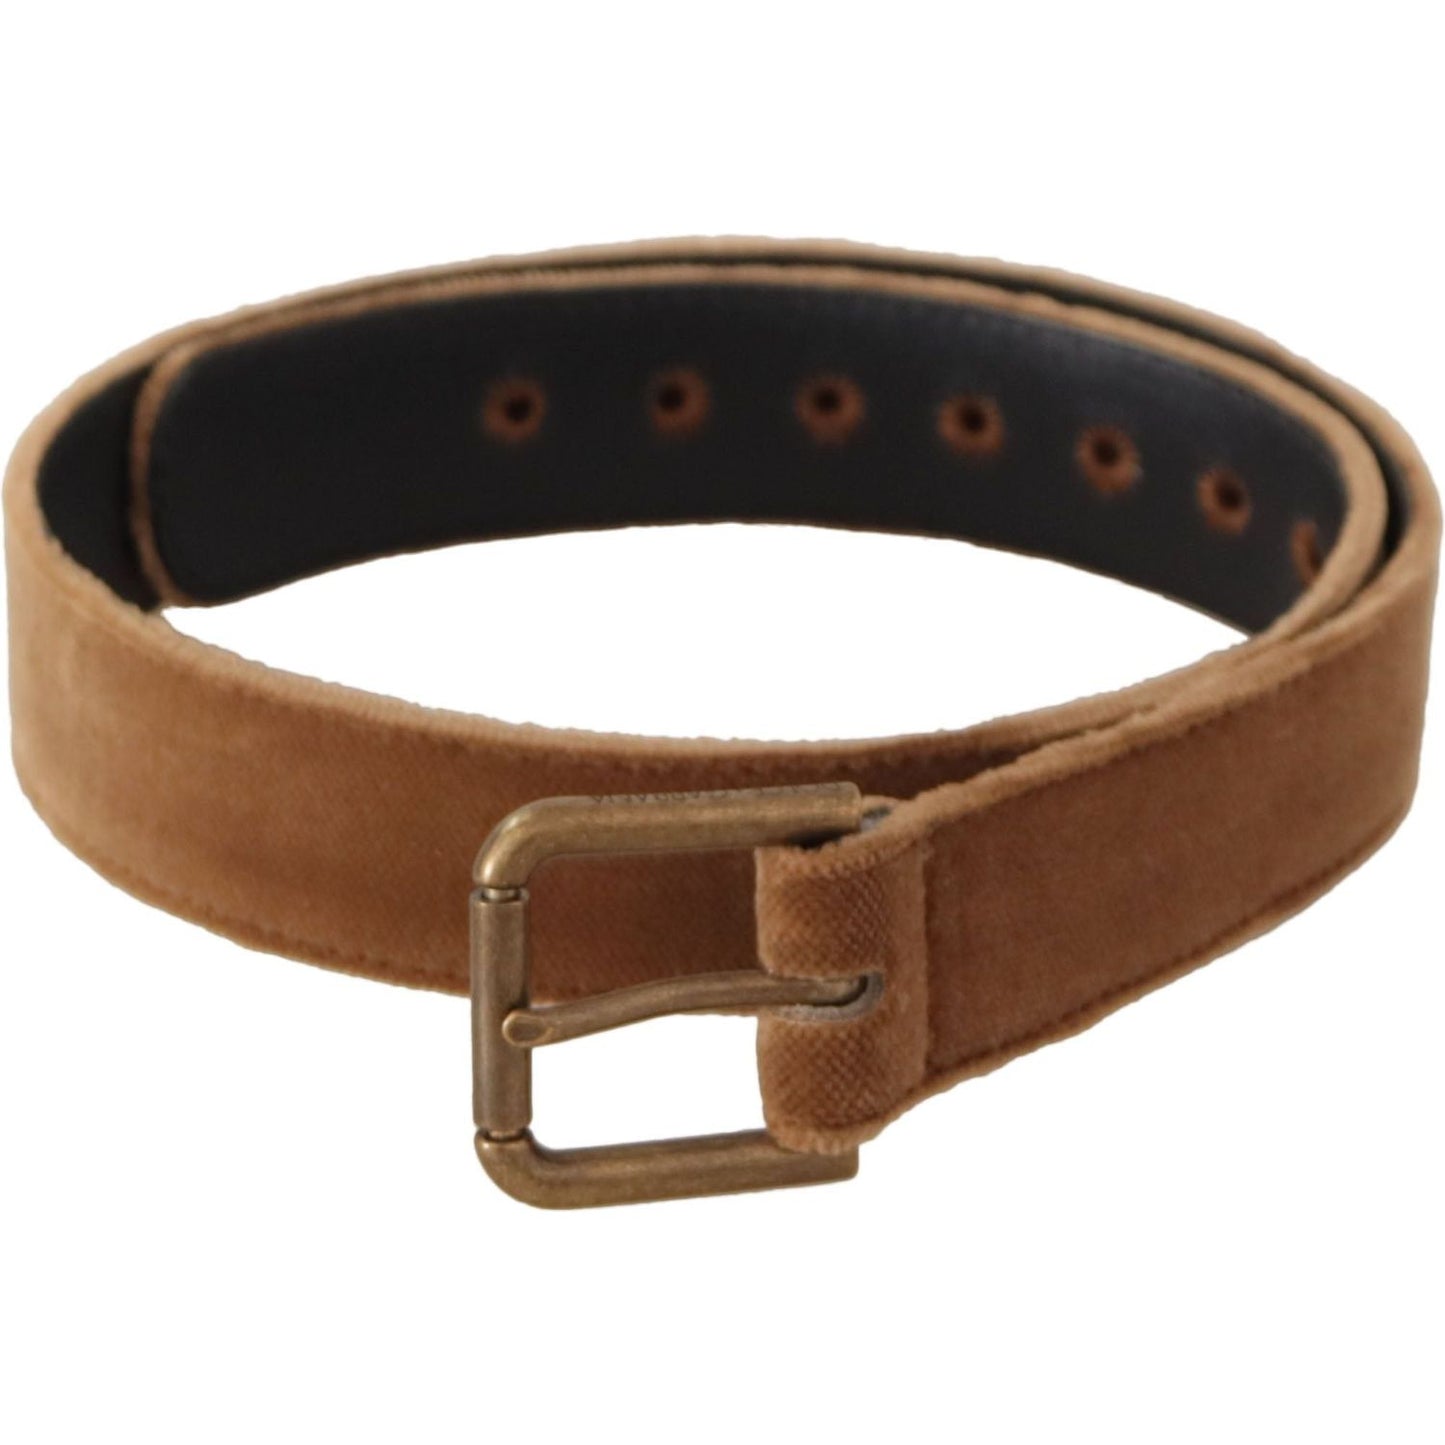 Dolce & Gabbana Elegant Engraved Buckle Leather Belt brown-velvet-bronze-vintage-logo-metal-buckle-belt